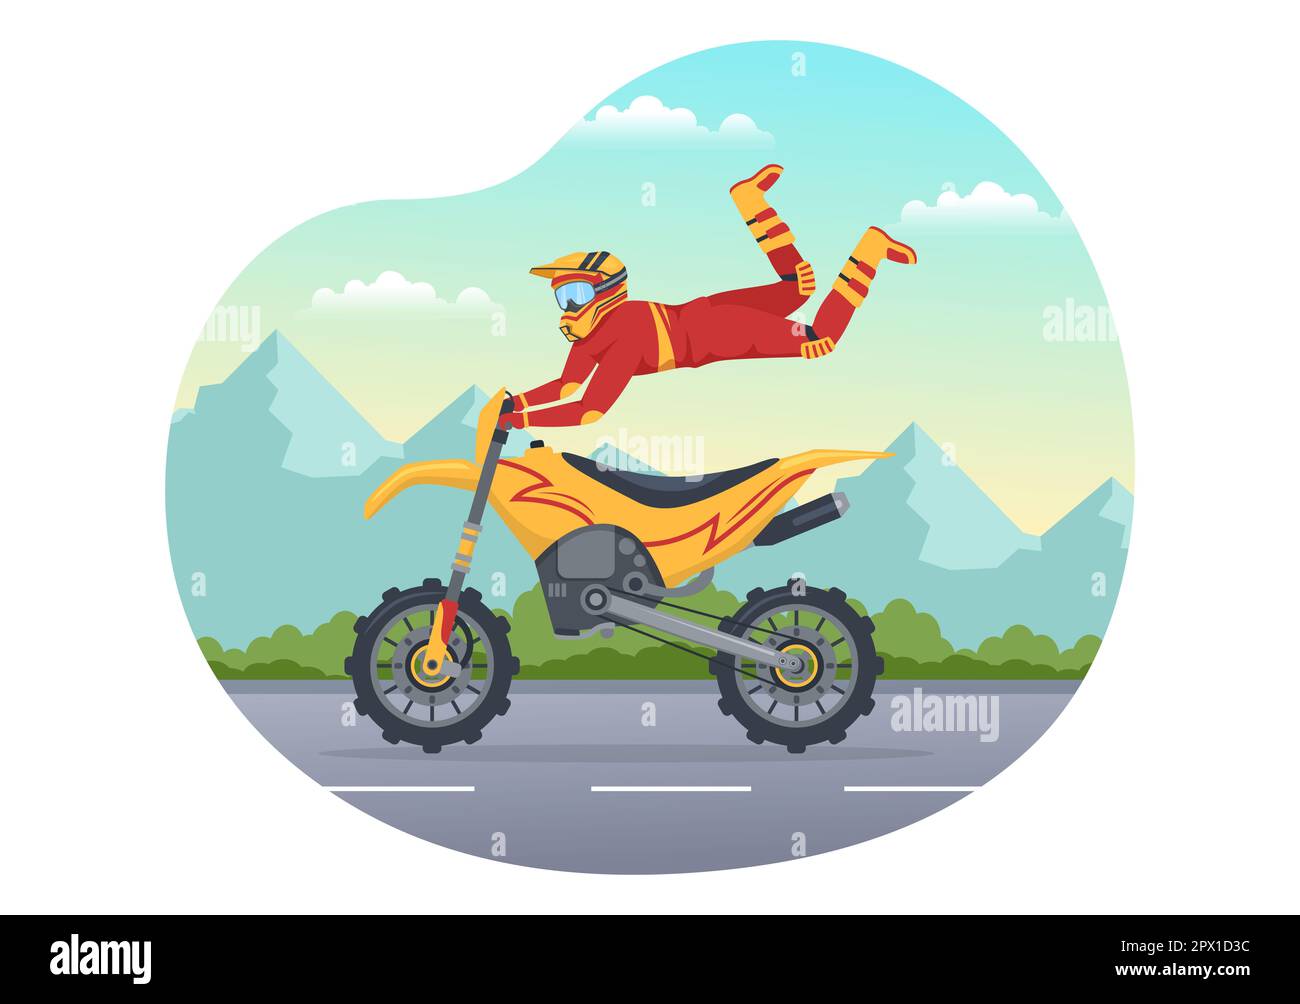 Illustrazione Motocross con un Rider guidare una bici attraverso il fango, strade rocciose e avventura in Extreme Sport Flat Cartoon modello disegnato a mano Foto Stock